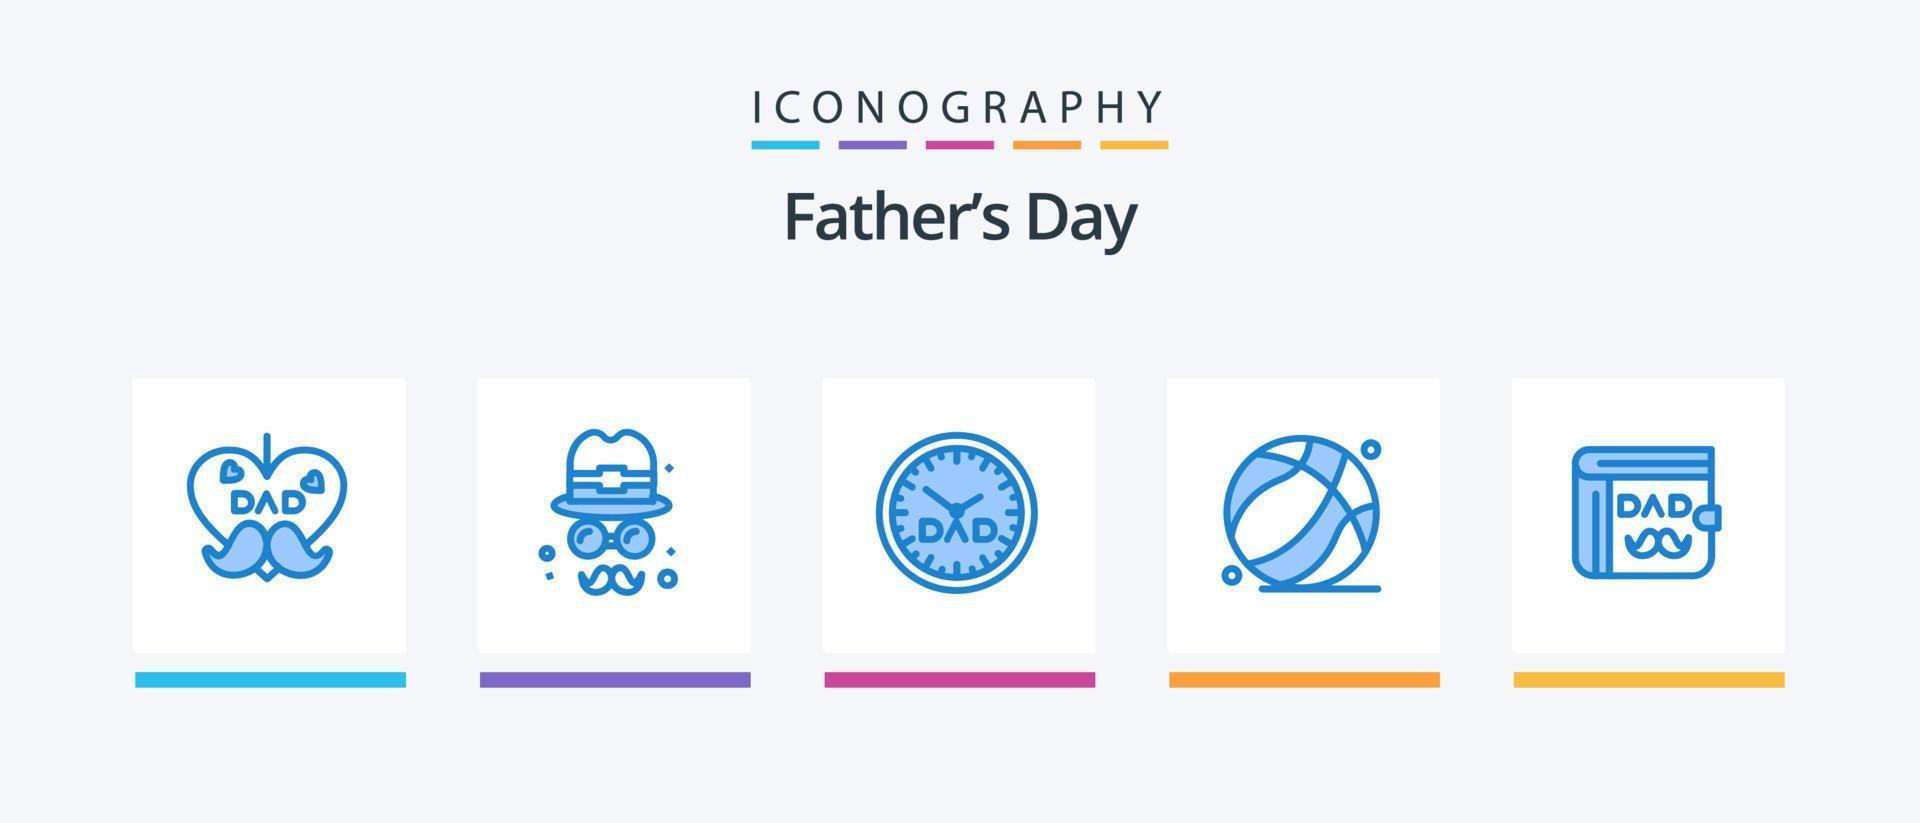 paquete de iconos azul 5 del día del padre que incluye a papá. dia del padre. reloj. padre. baloncesto. diseño de iconos creativos vector